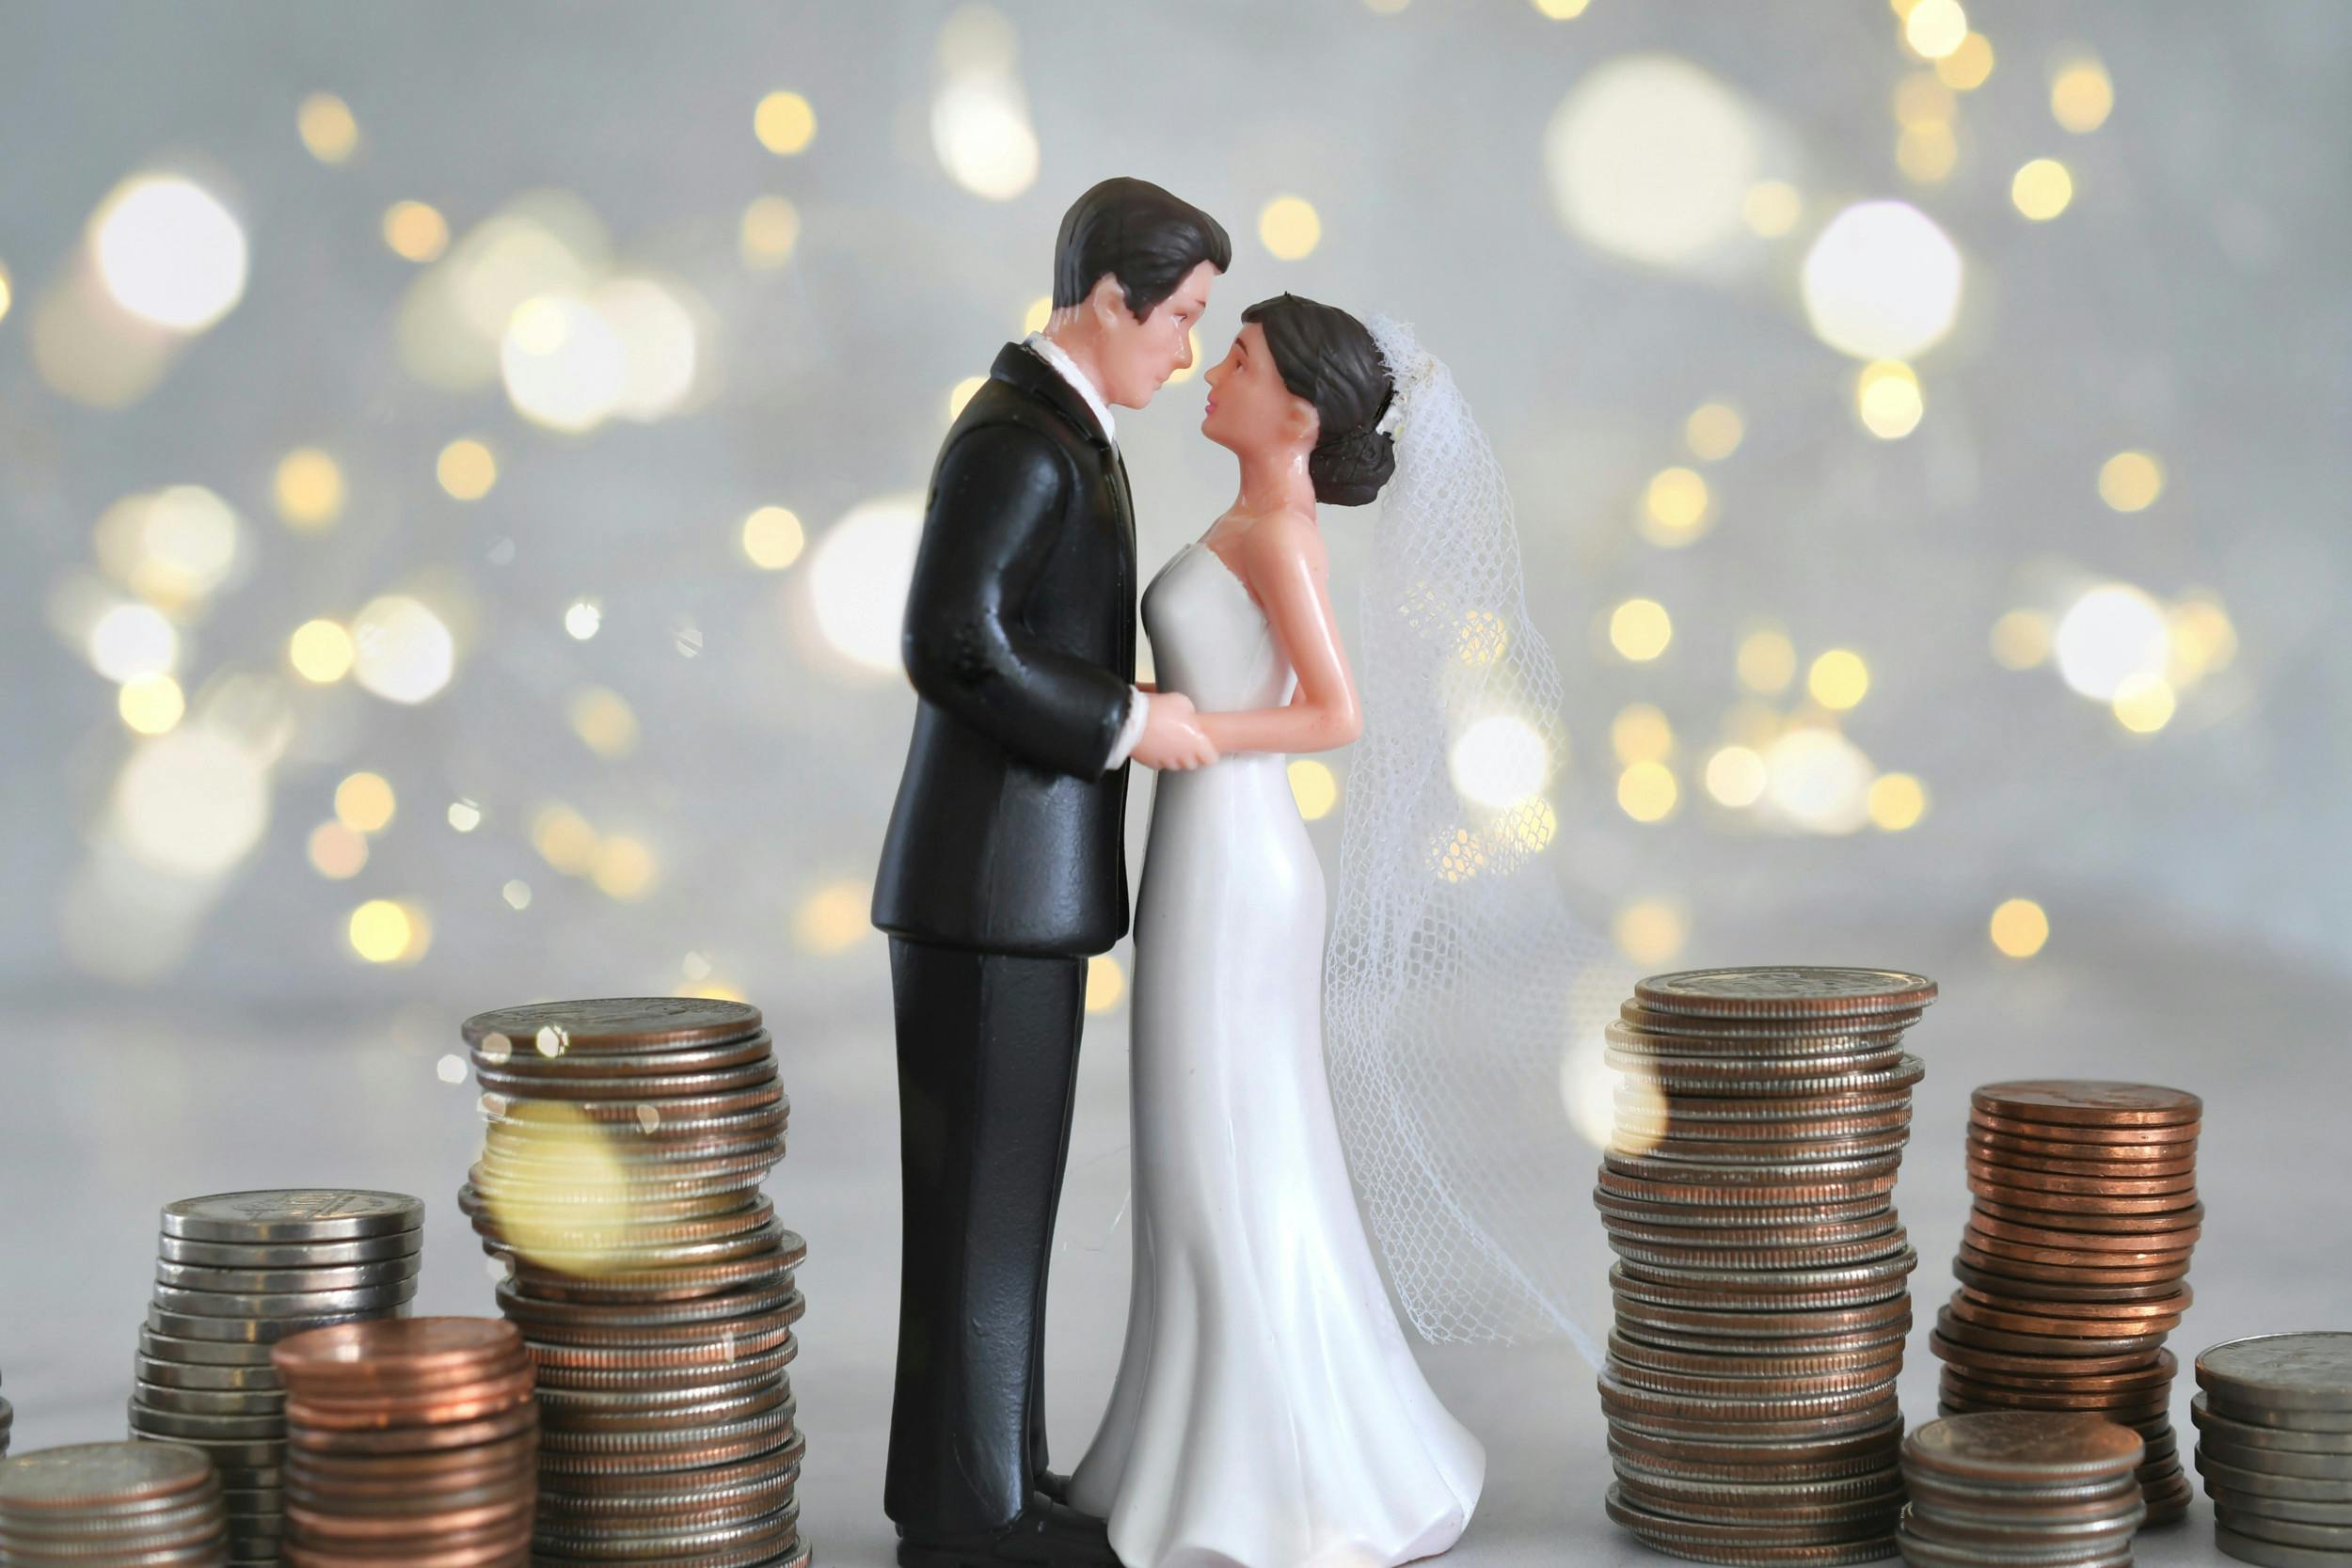 Figur af brudepar står mellem stakke af mønter